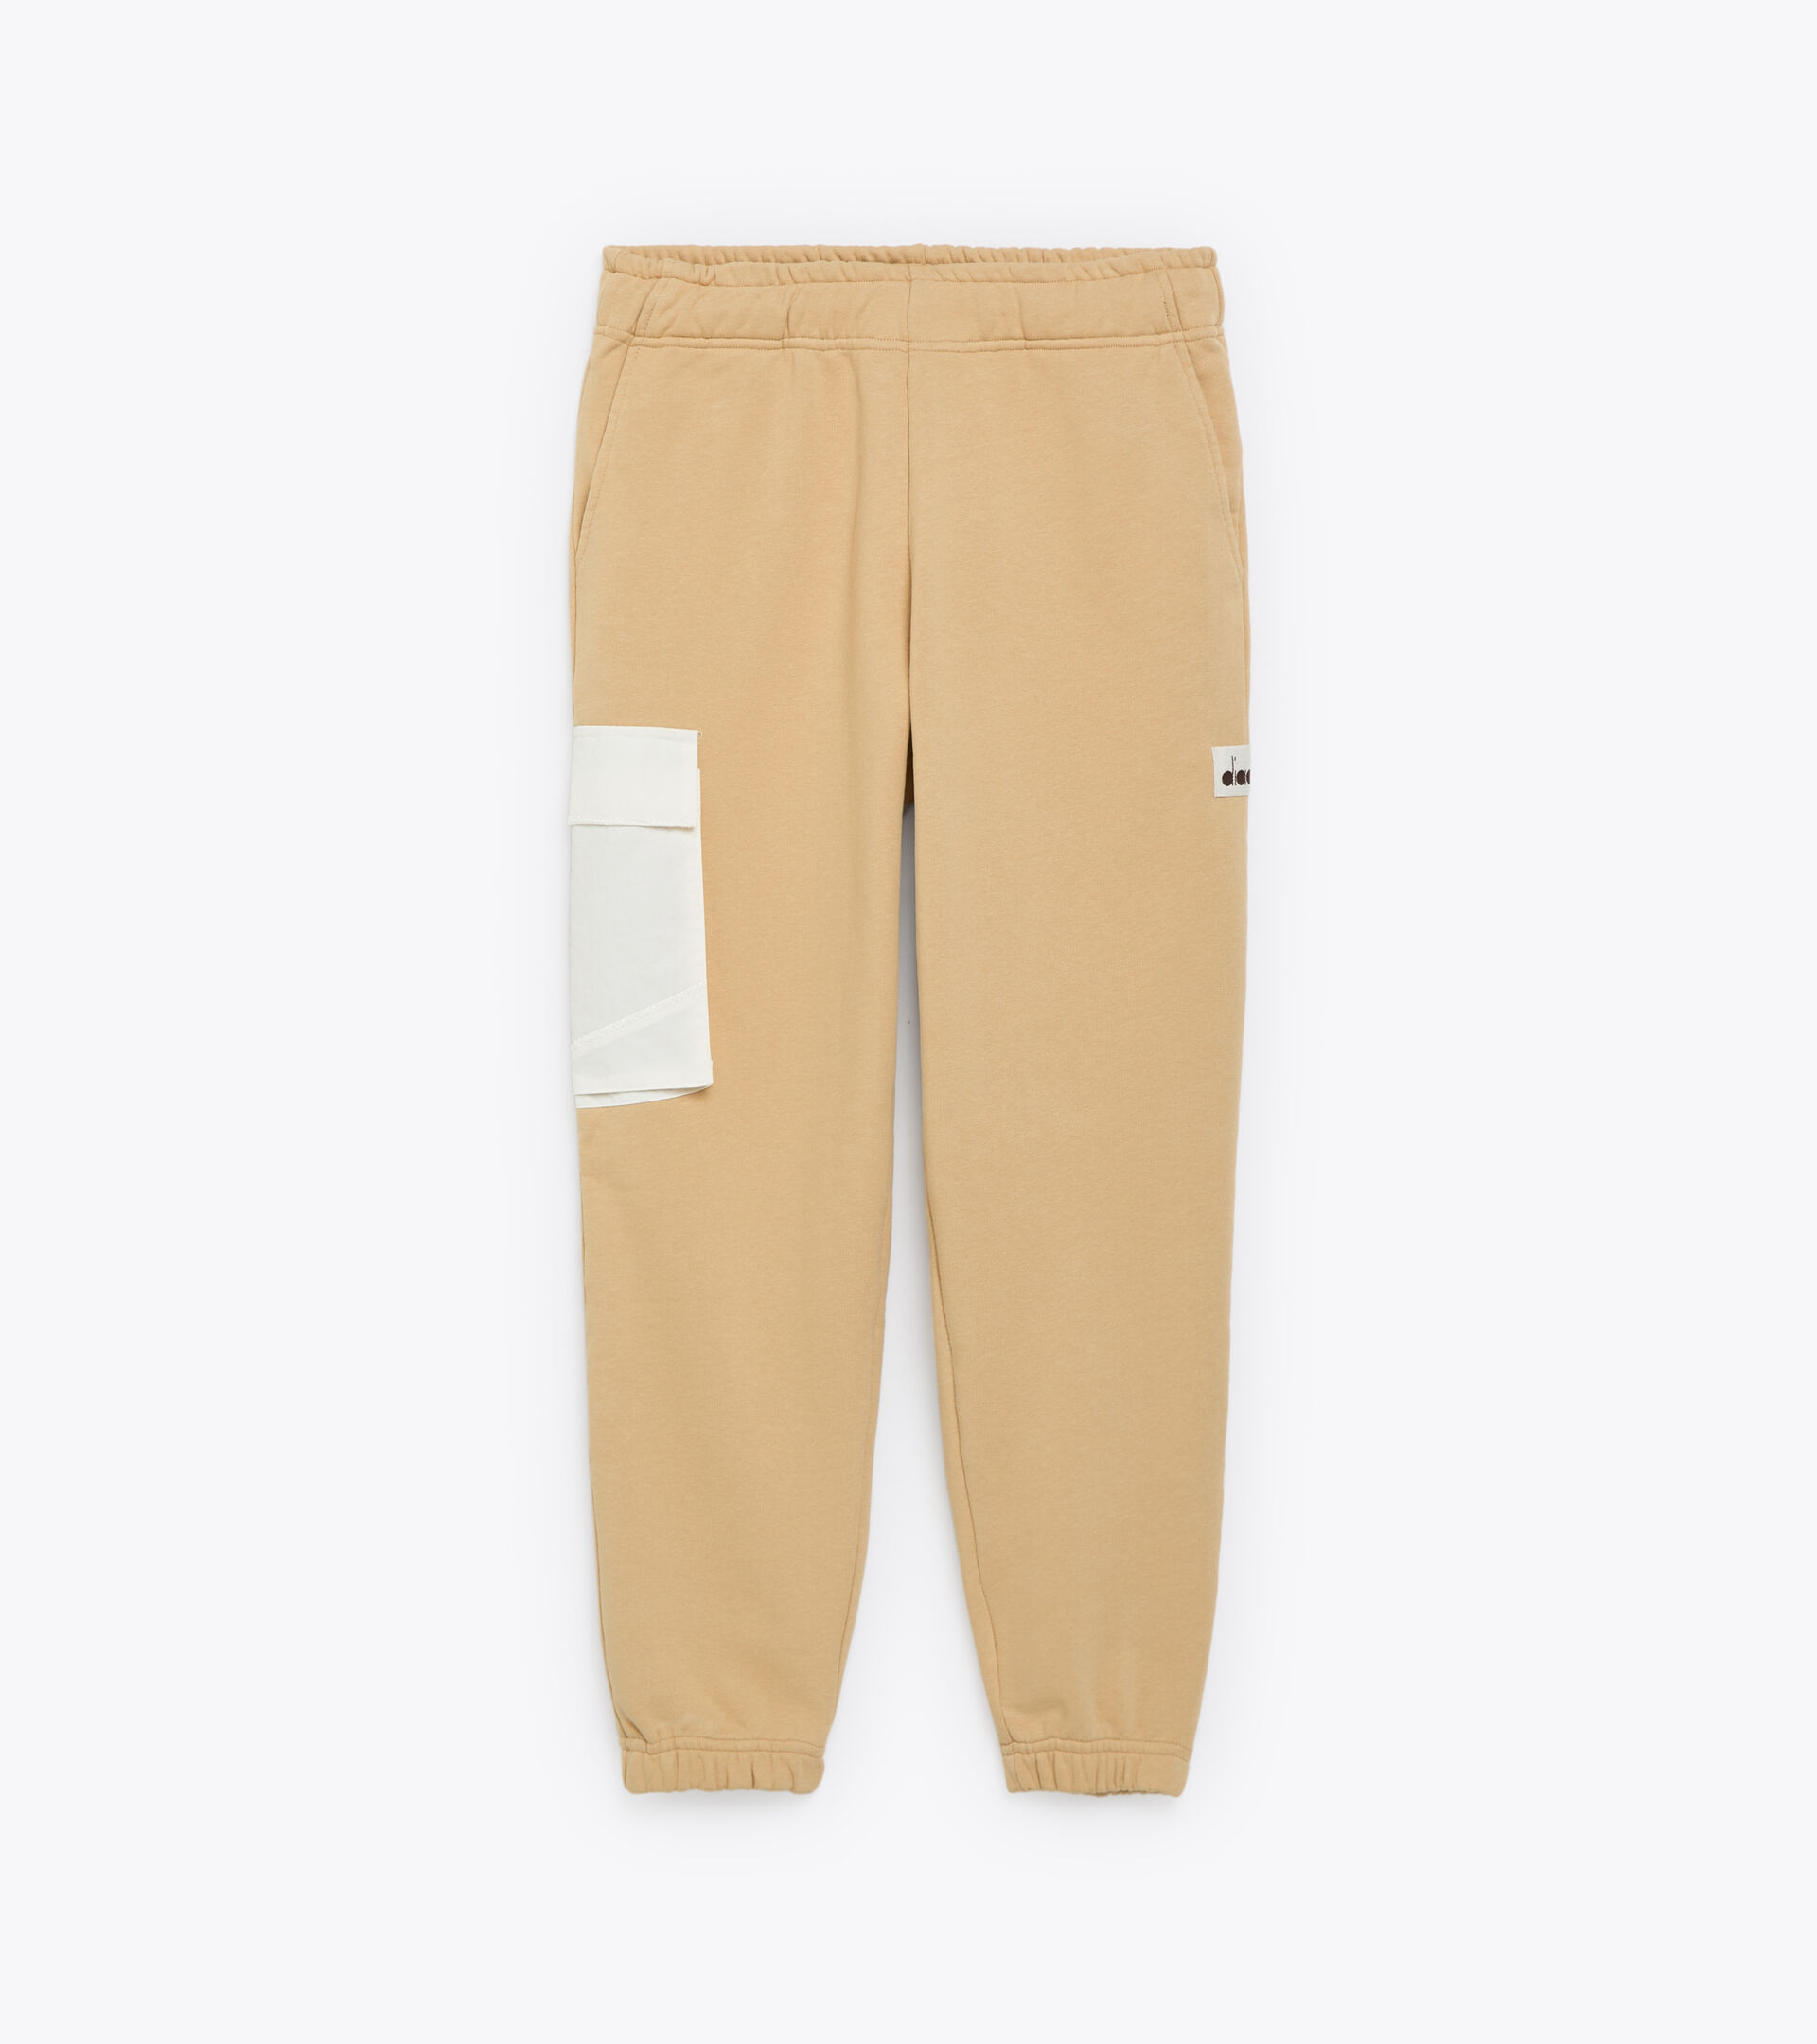 Pantalones - Made in Italy - Hombre PANT 2030 ARENA CALIDO - Diadora